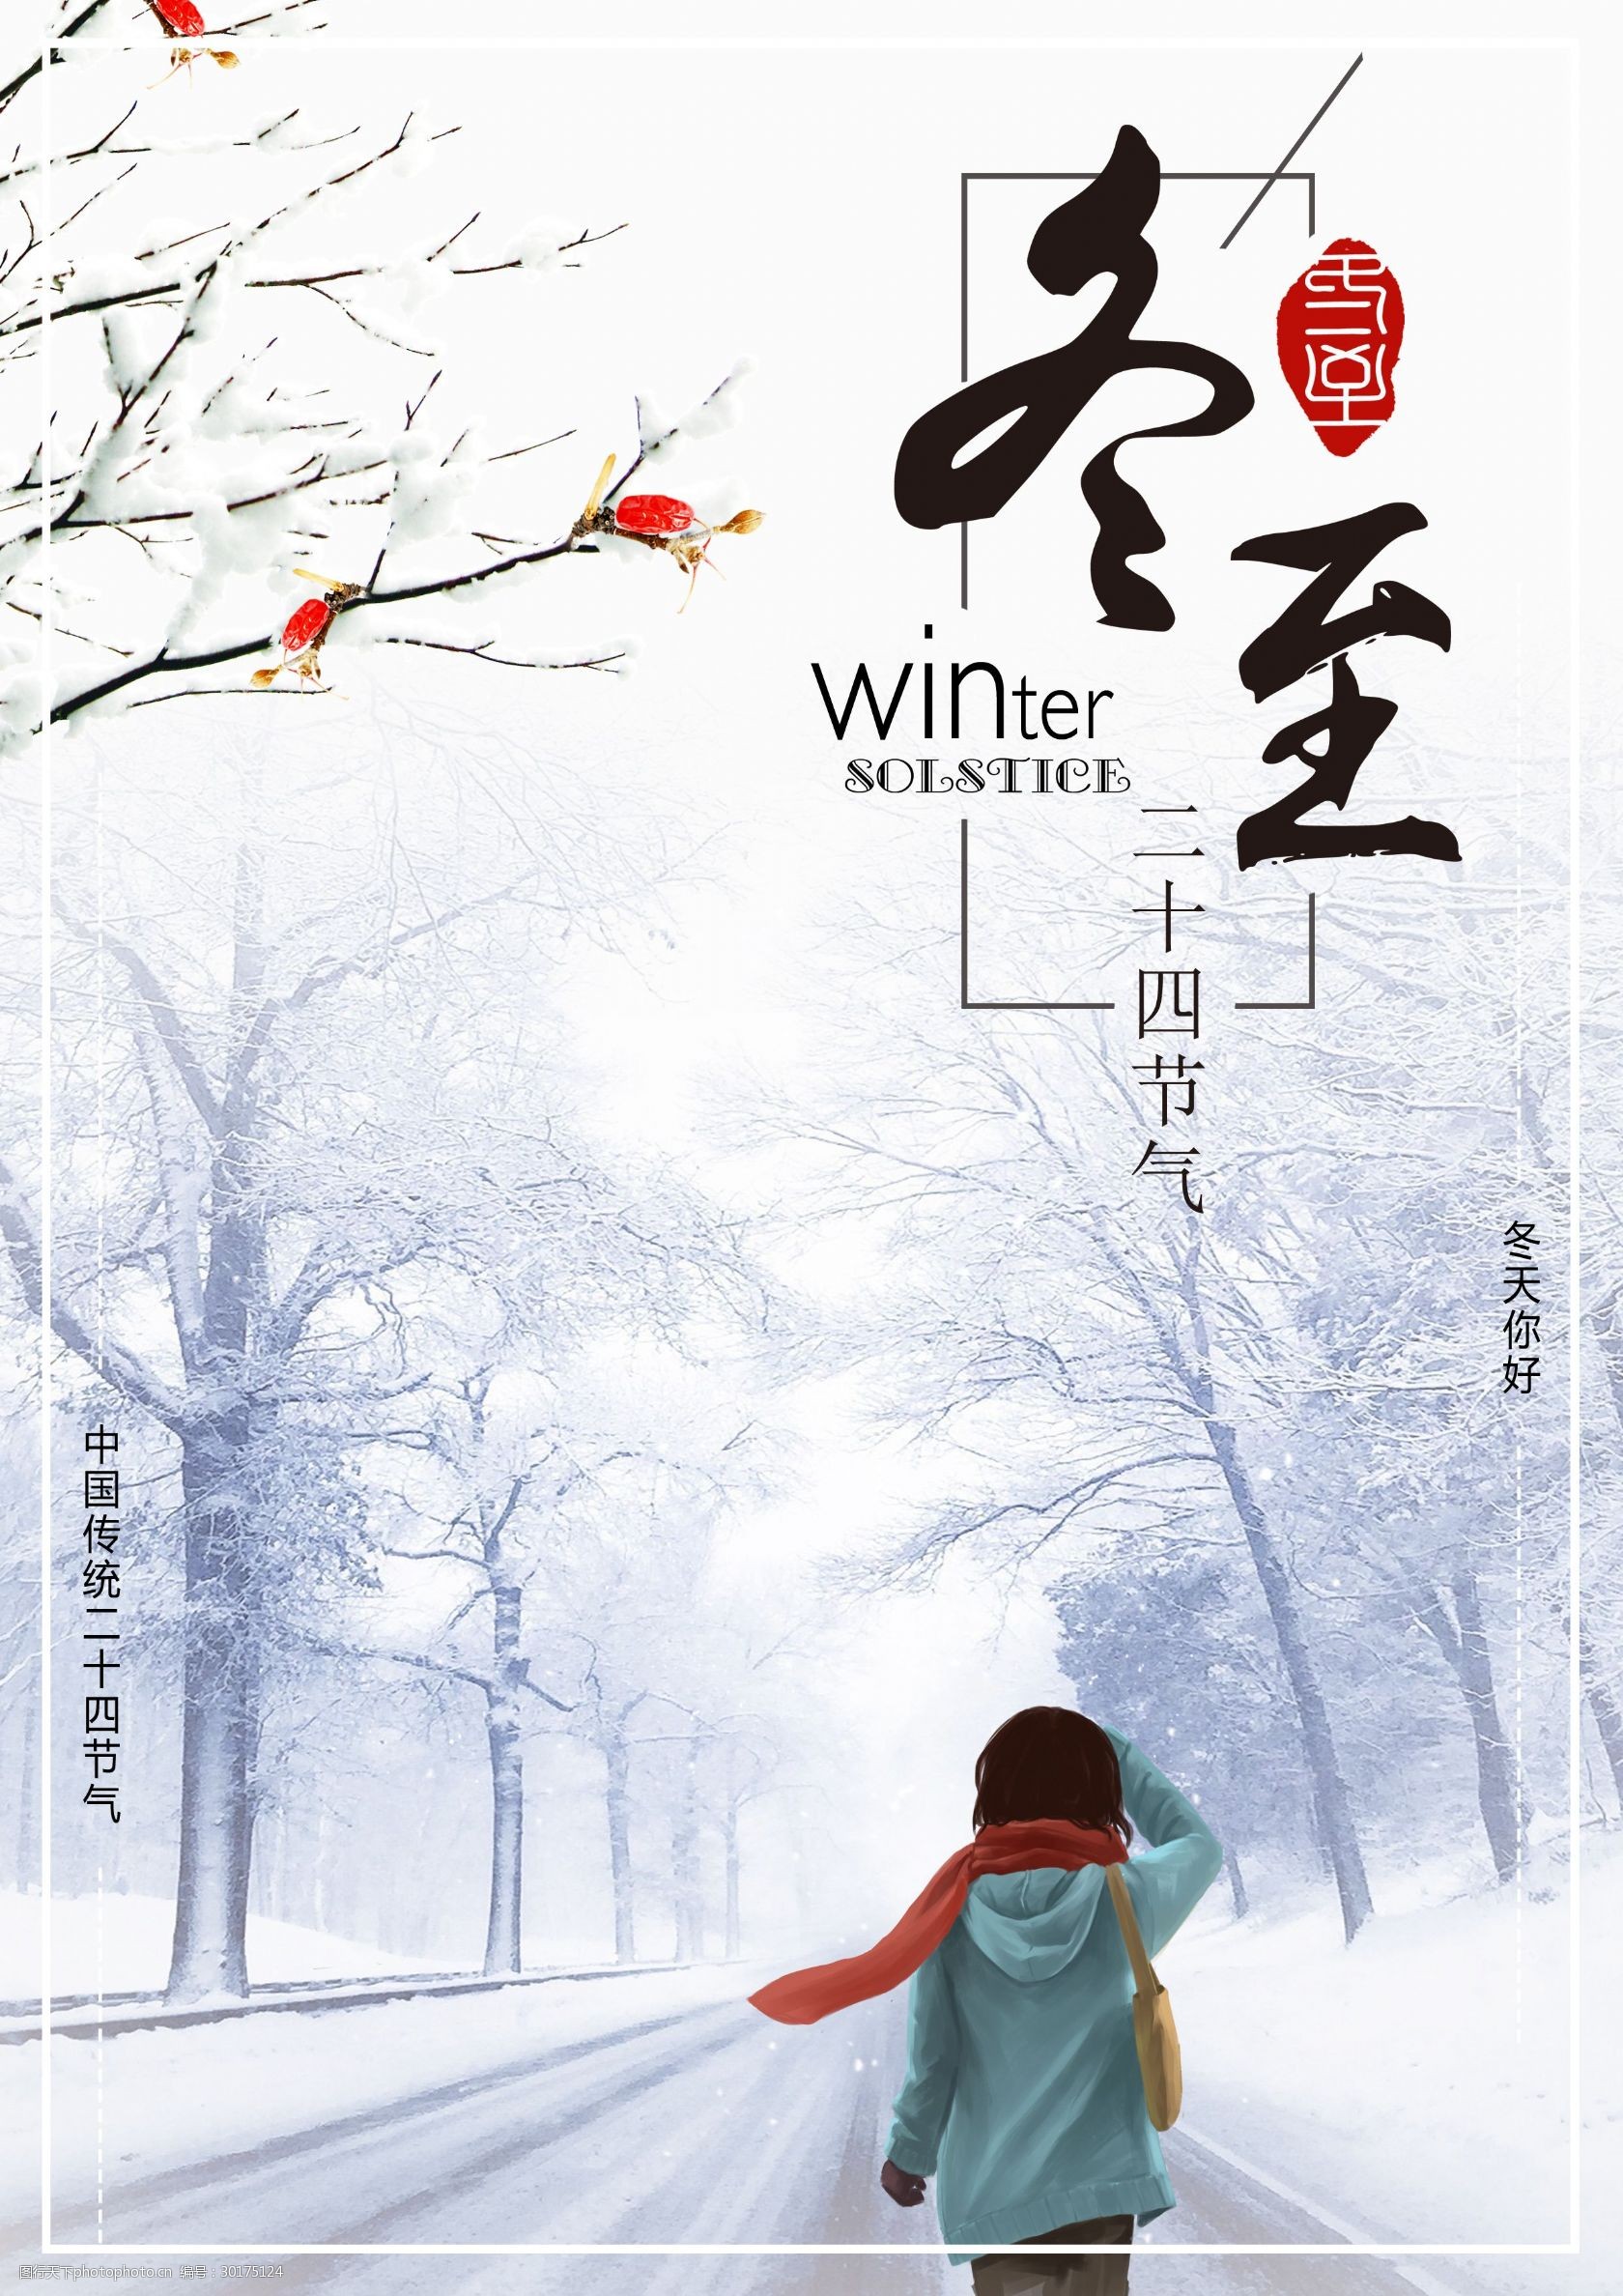 冬至 二十四节气 中国传统节日 冬至海报 女孩背影 冬天你好 大雪海报